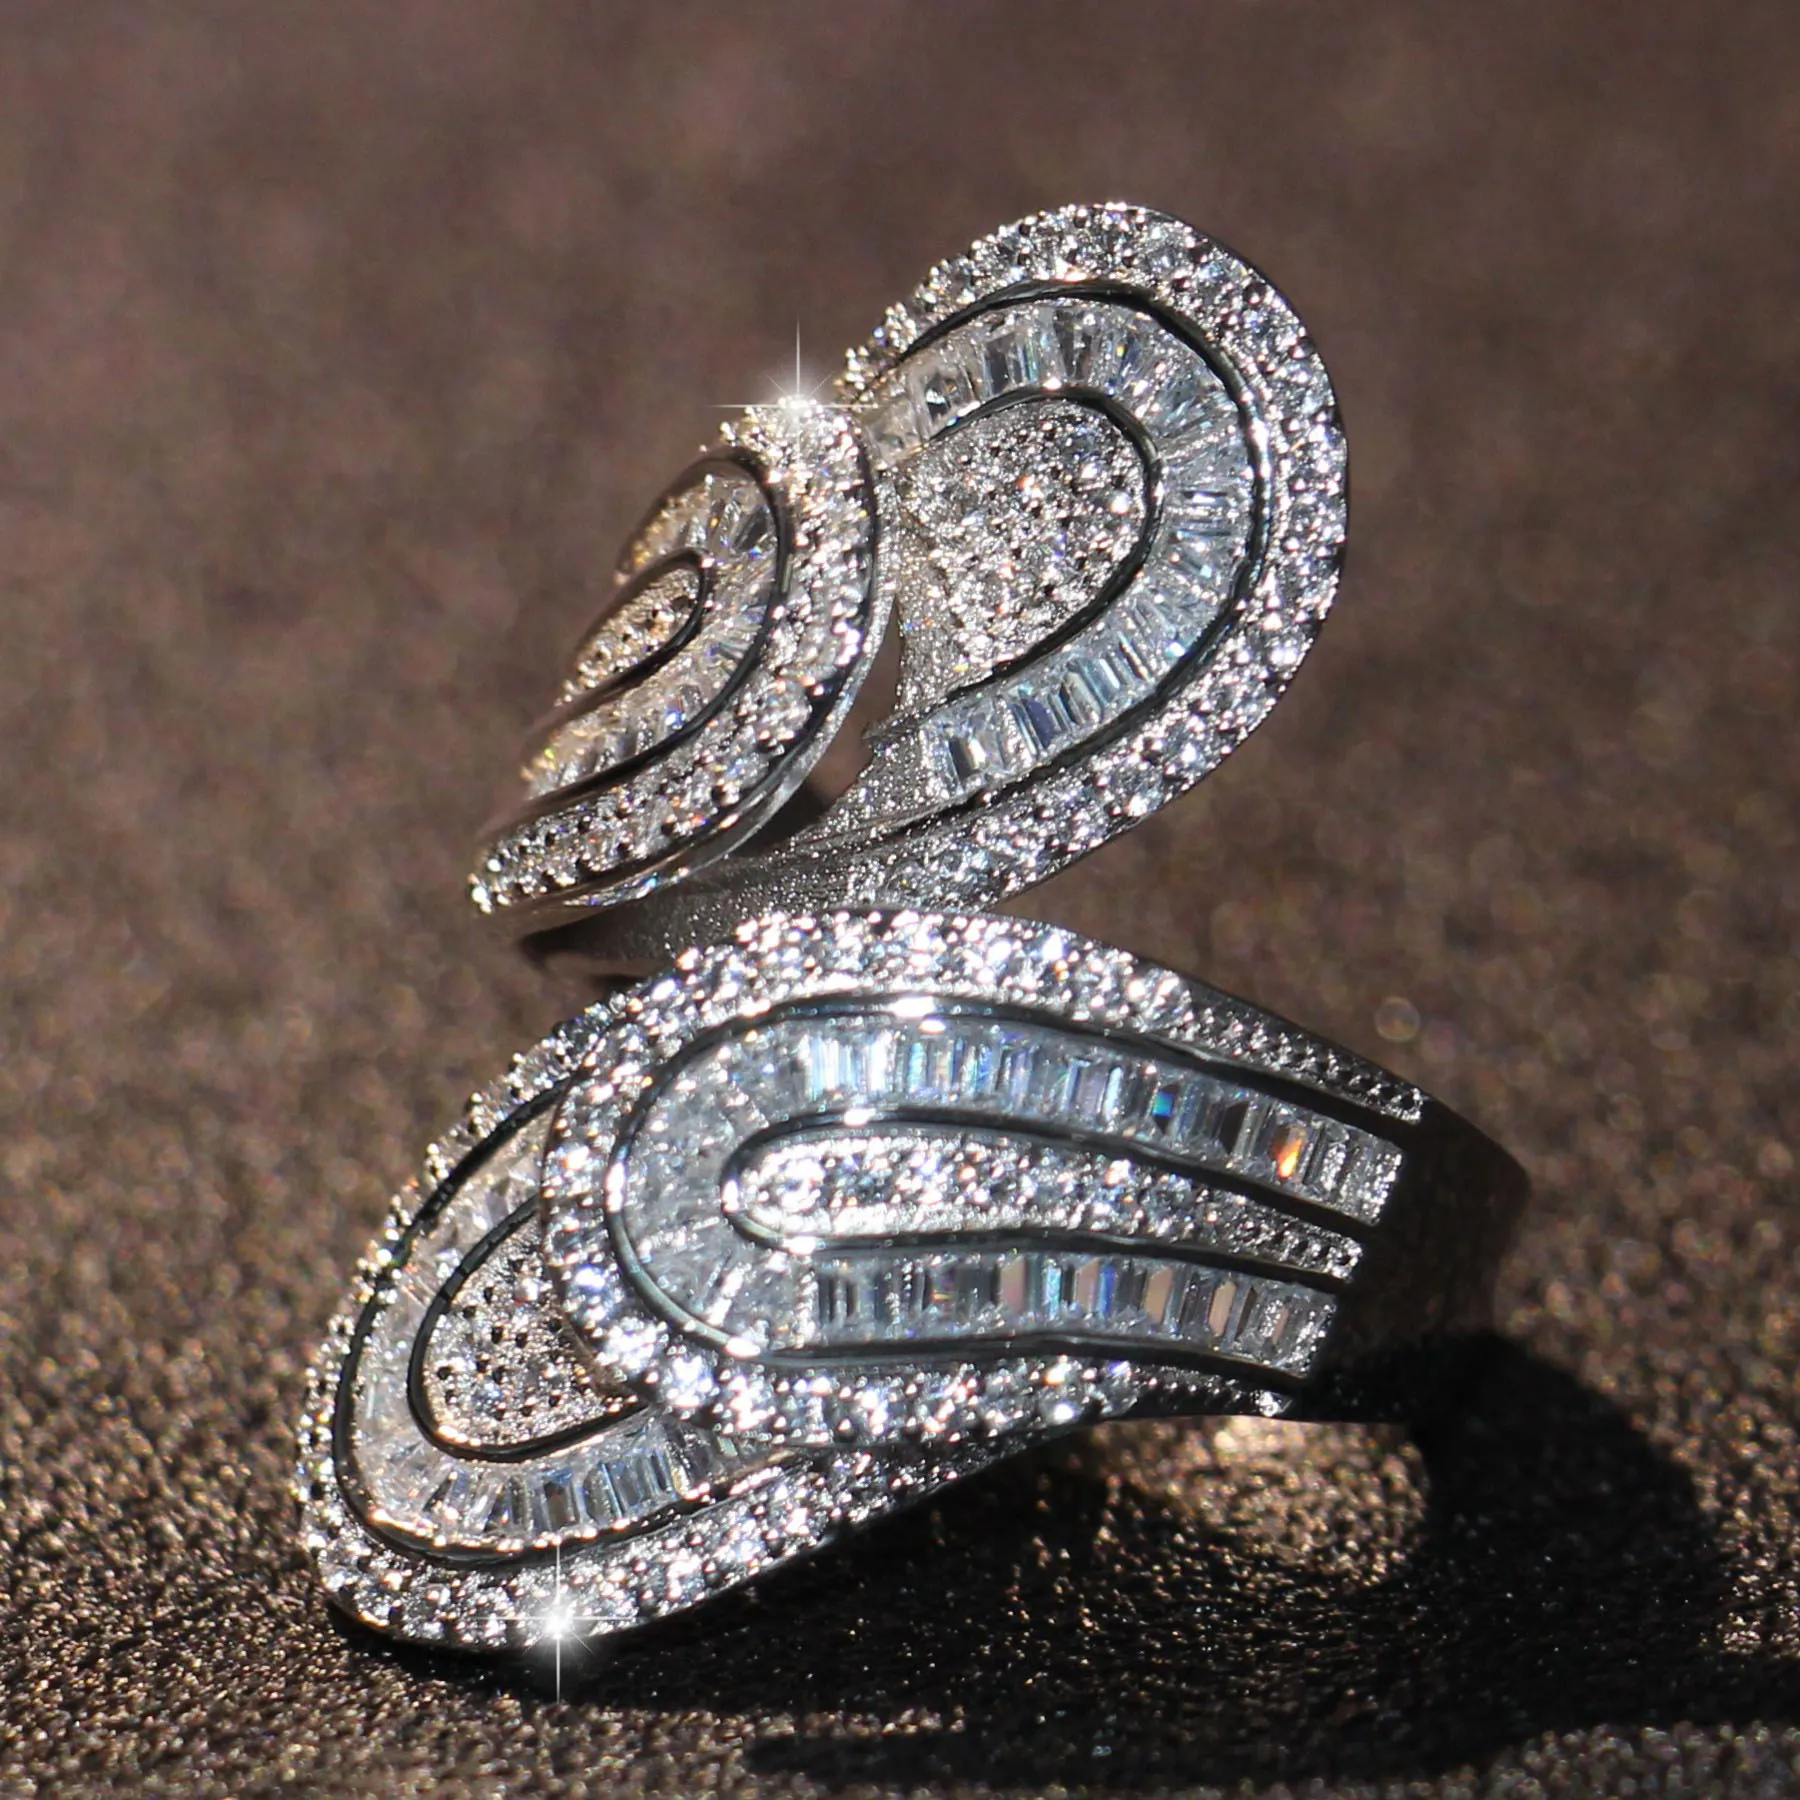 Älskare ring för kvinnor lyx smycken 925 sterlijng silver prinsessa full vit topaz cz diamant ädelstenar sona damer bröllop band ring gåva